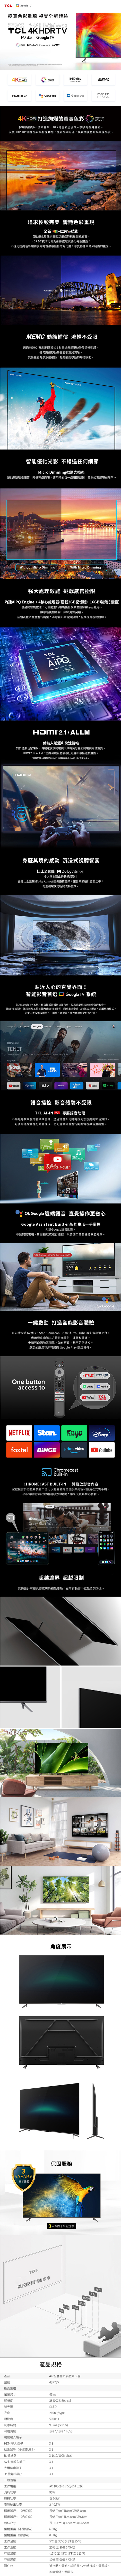 TCL 43吋 43P737 4K Google TV 智能連網液晶顯示器 P737系列